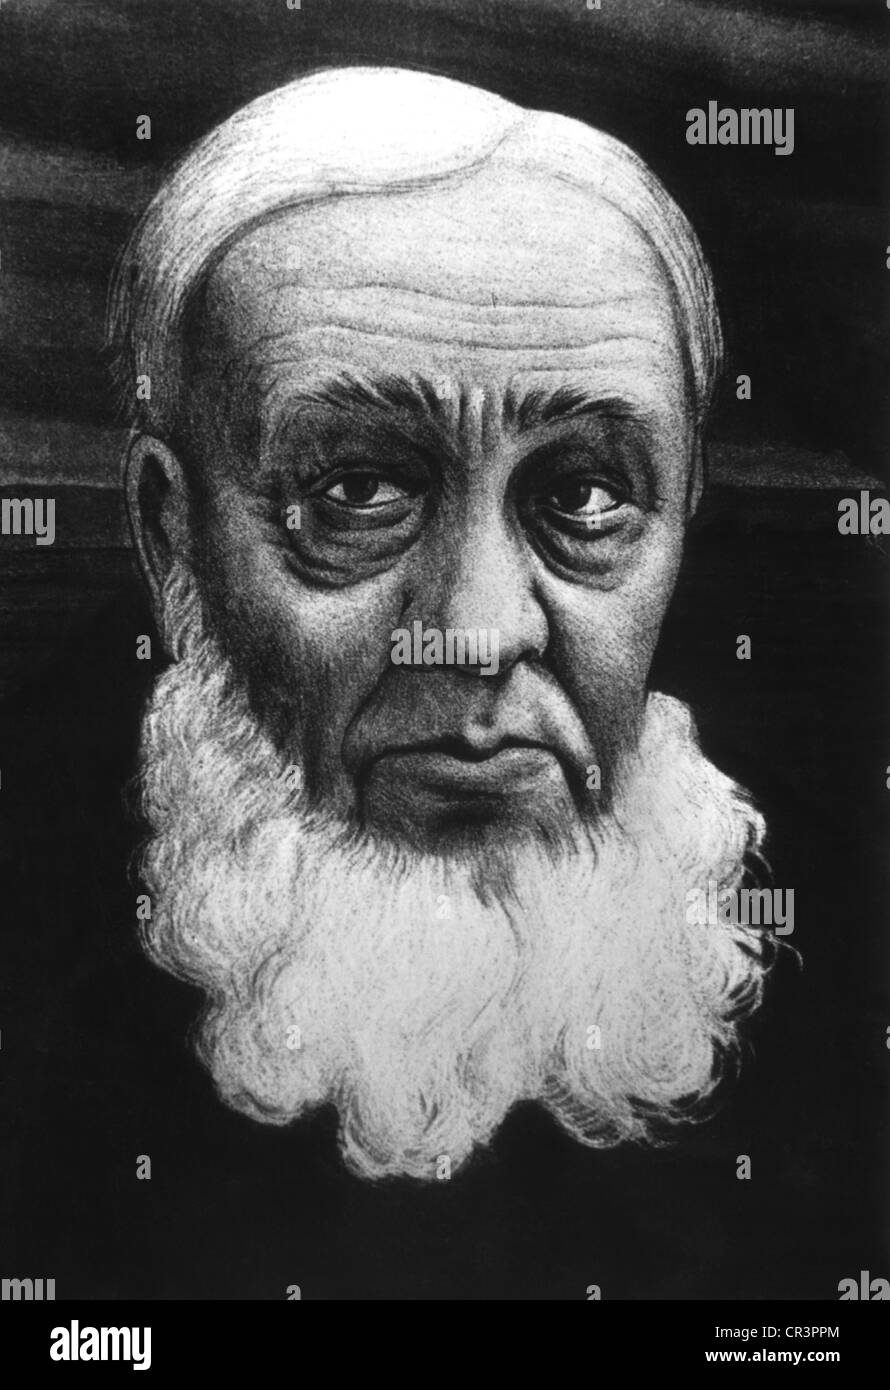 Kruger, Paulus 'Ohm', 10.10.1825 - 14.7.1904, politicien sud-africain, Président de la République sud-africaine 1883 - 1902, portrait, dessin, vers 1900, Banque D'Images